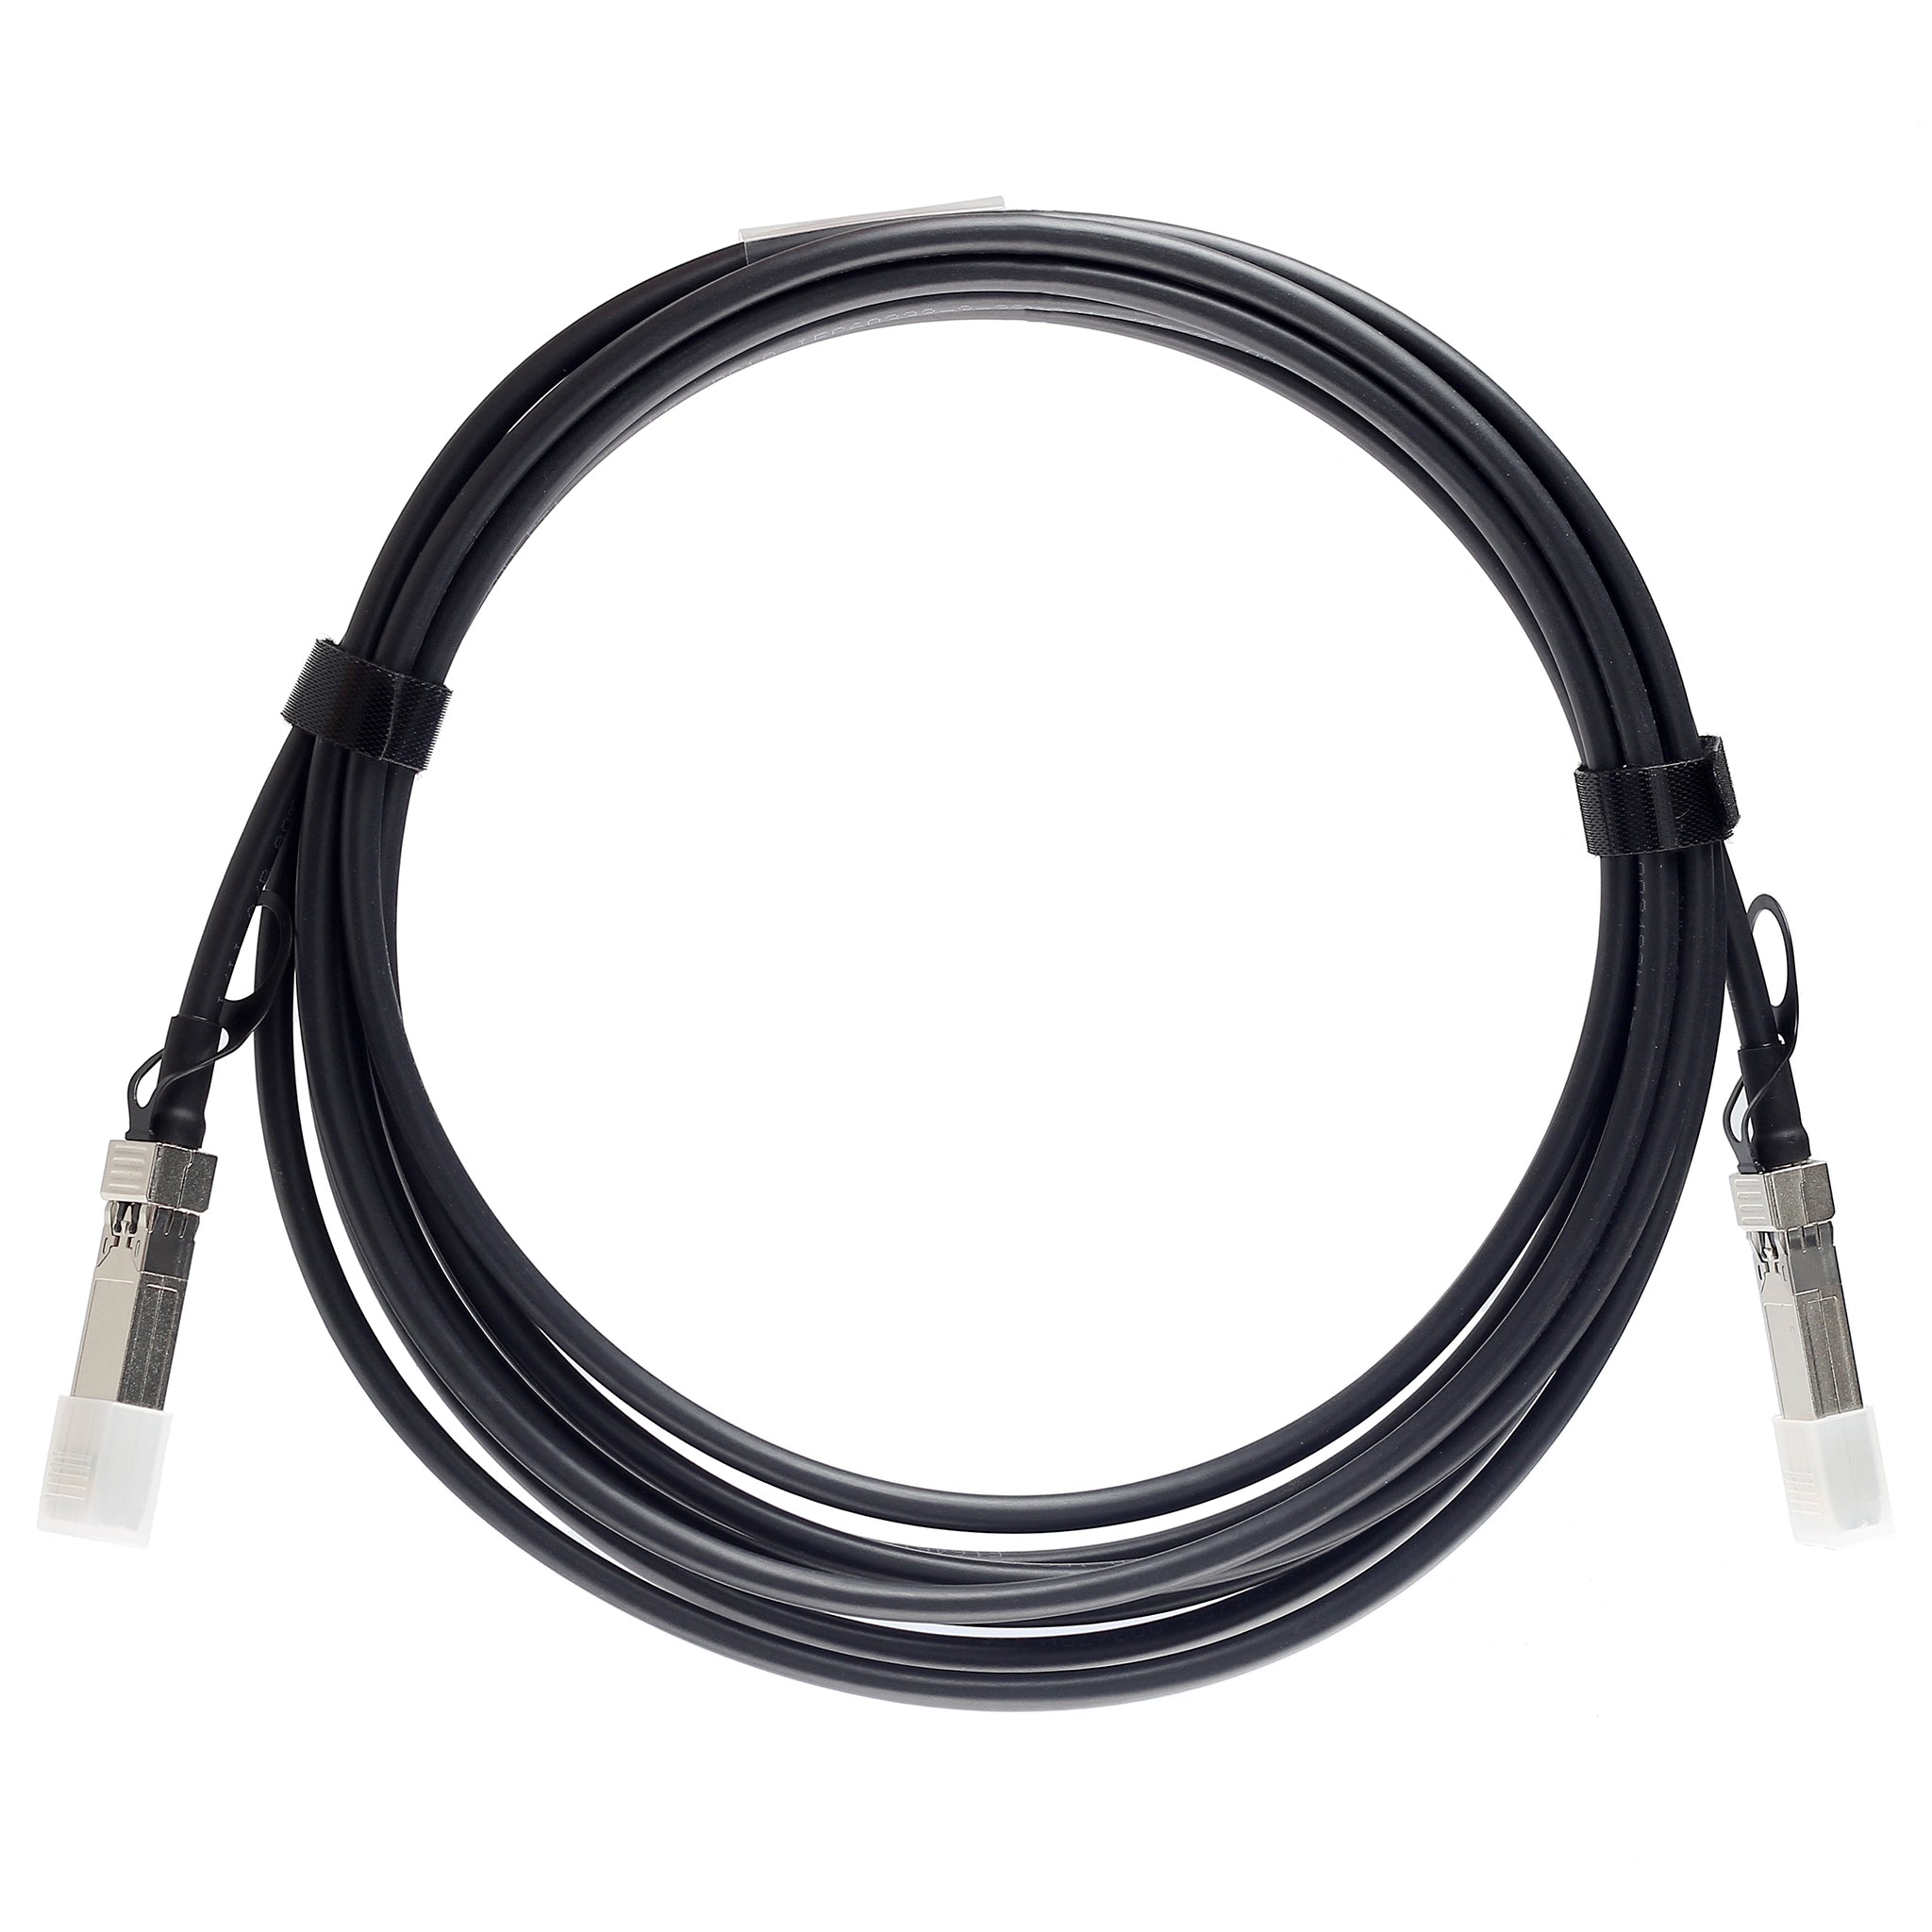 QSFP-100G-C1M-C - 1m Alcatel-Lucent (Nokia) Compatible 100G QSFP28 Passive Direct Attach Copper Twinax Cable